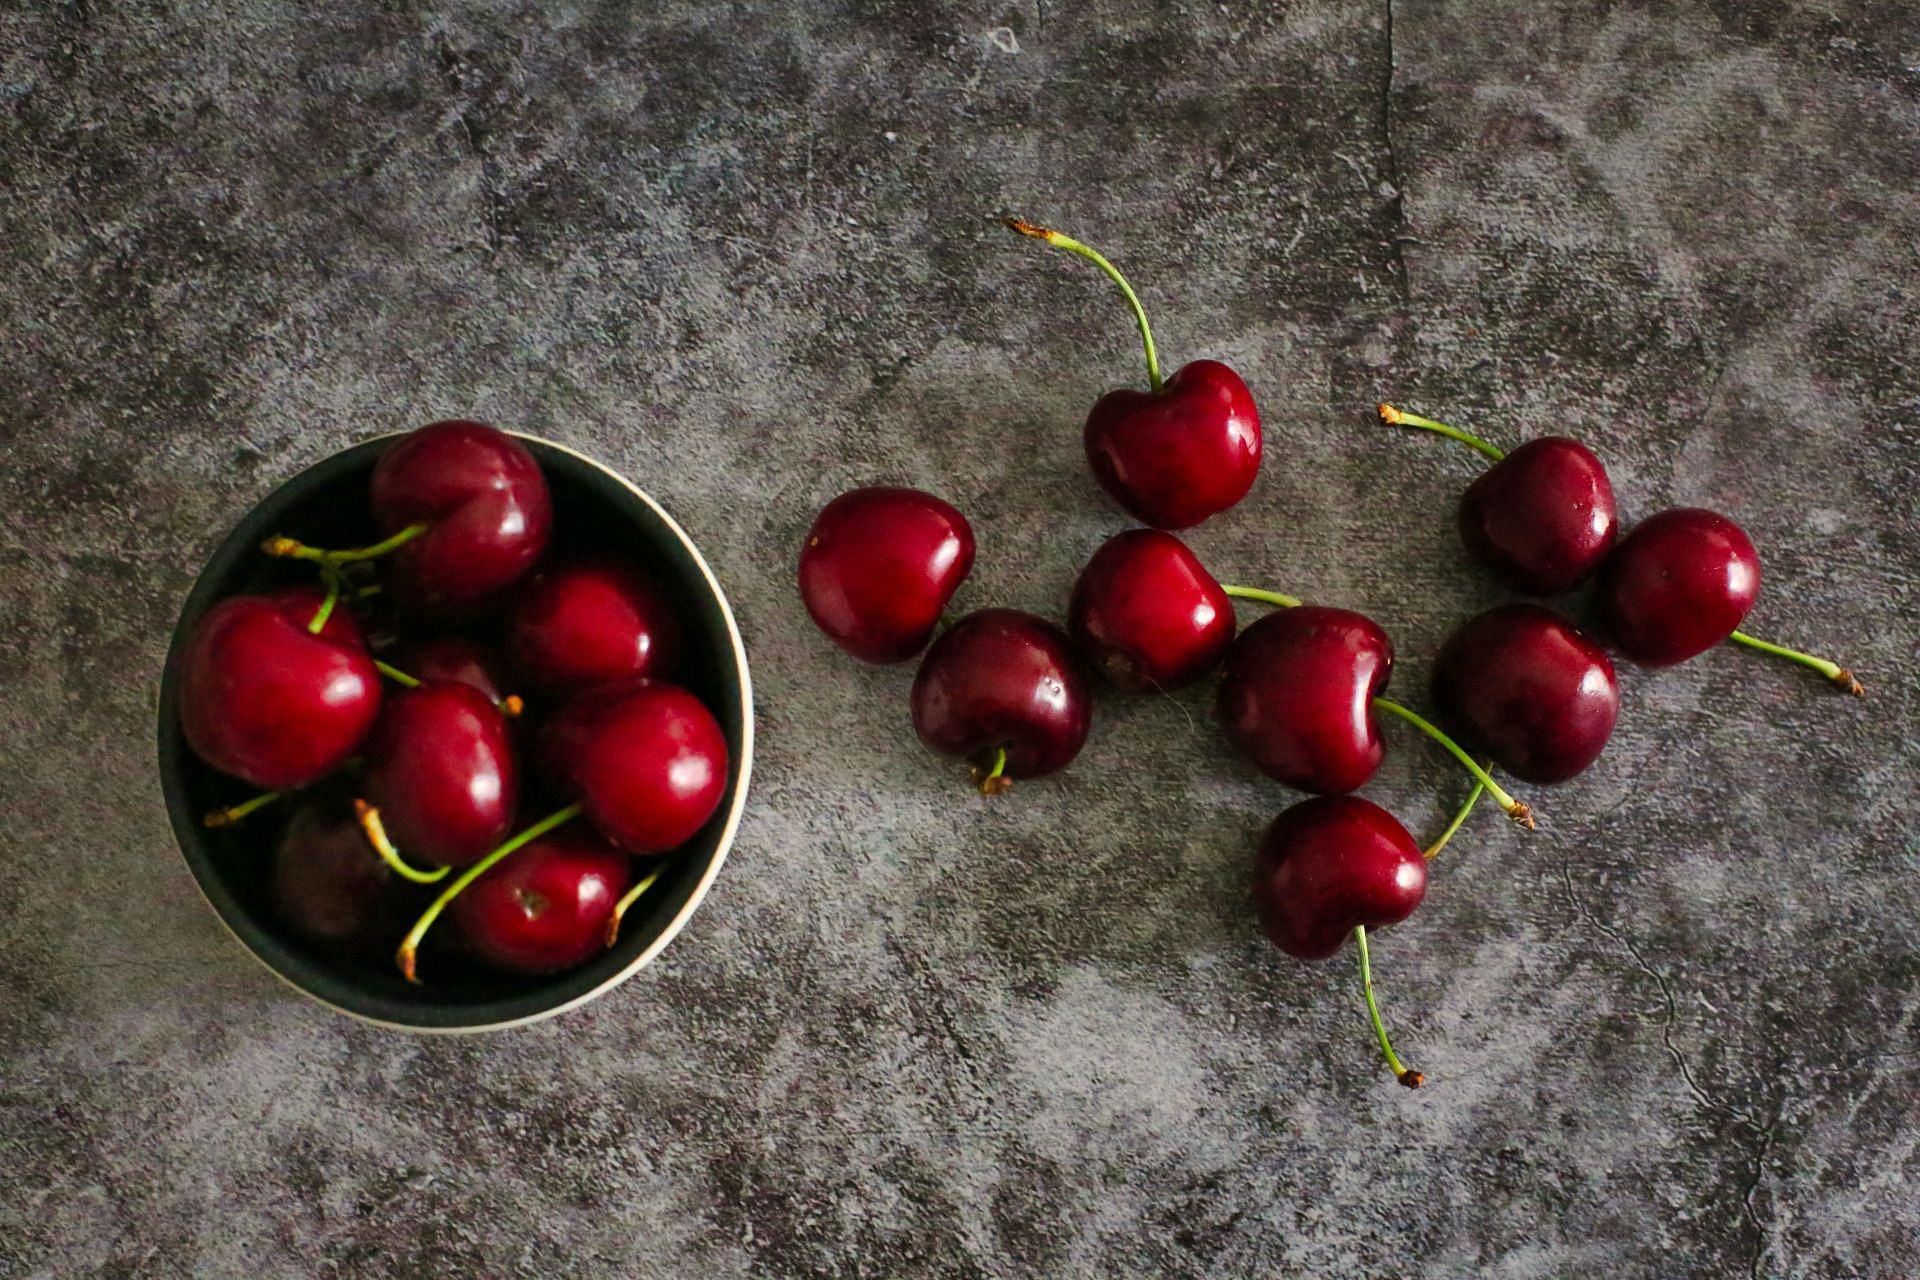 Cherry (Image via Unsplash/Rita)